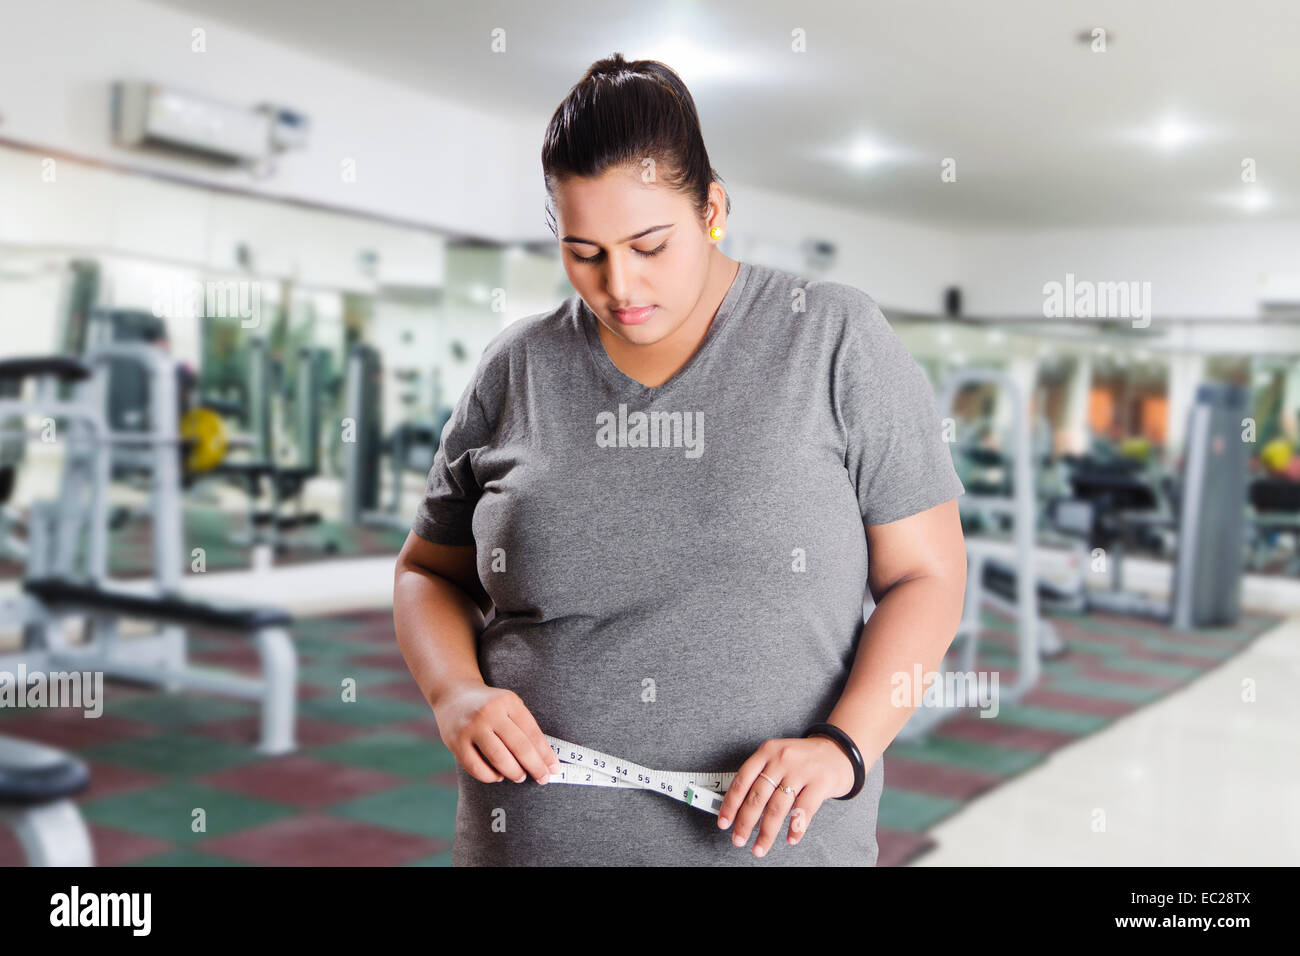 Dame obèse indiennes problème de perte de poids Banque D'Images